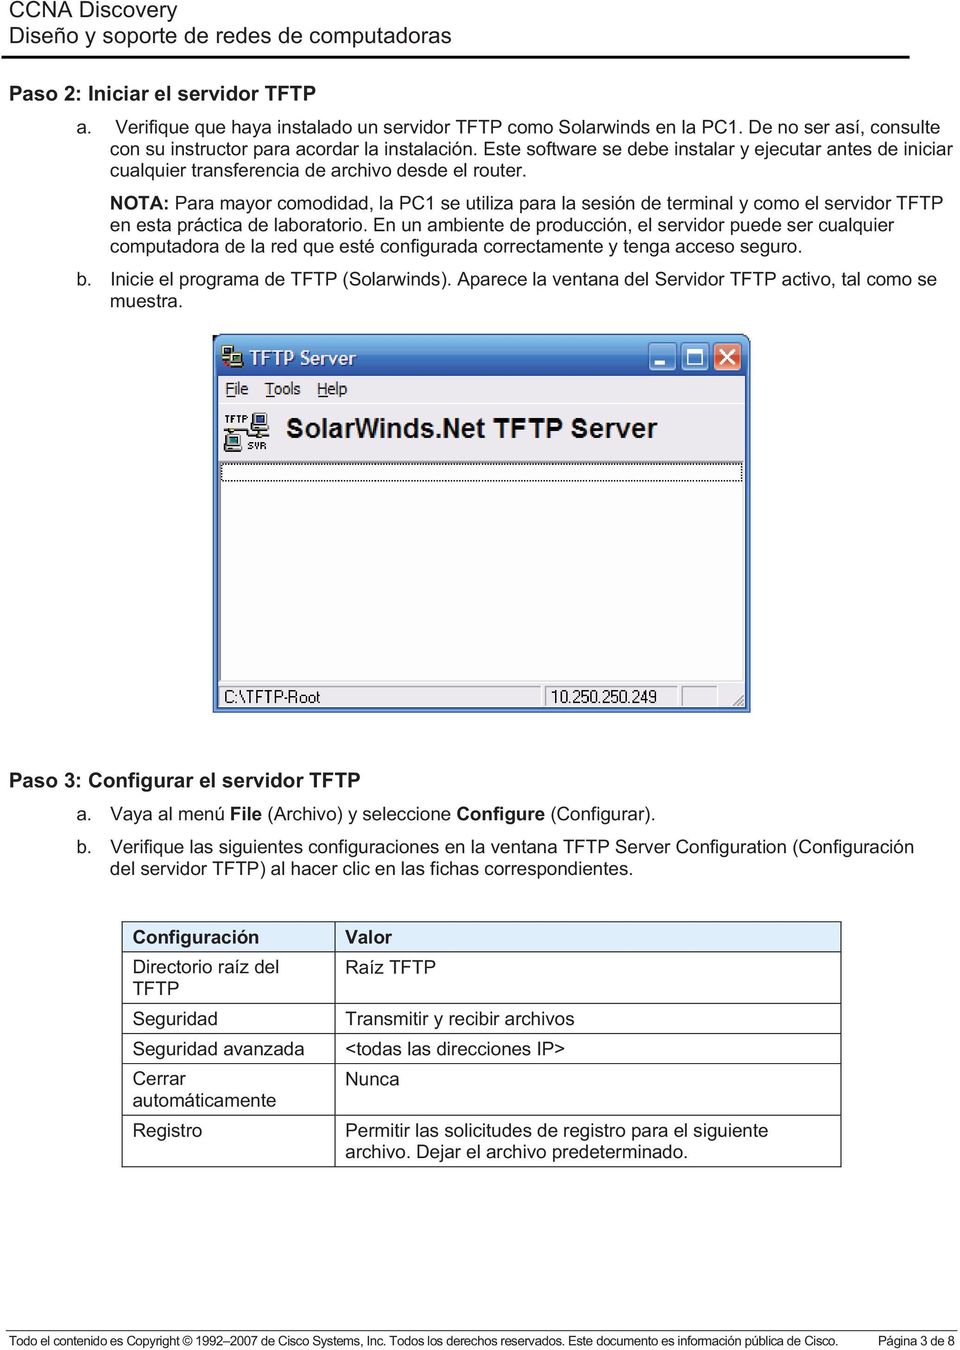 NOTA: Para mayor comodidad, la PC1 se utiliza para la sesión de terminal y como el servidor TFTP en esta práctica de laboratorio.